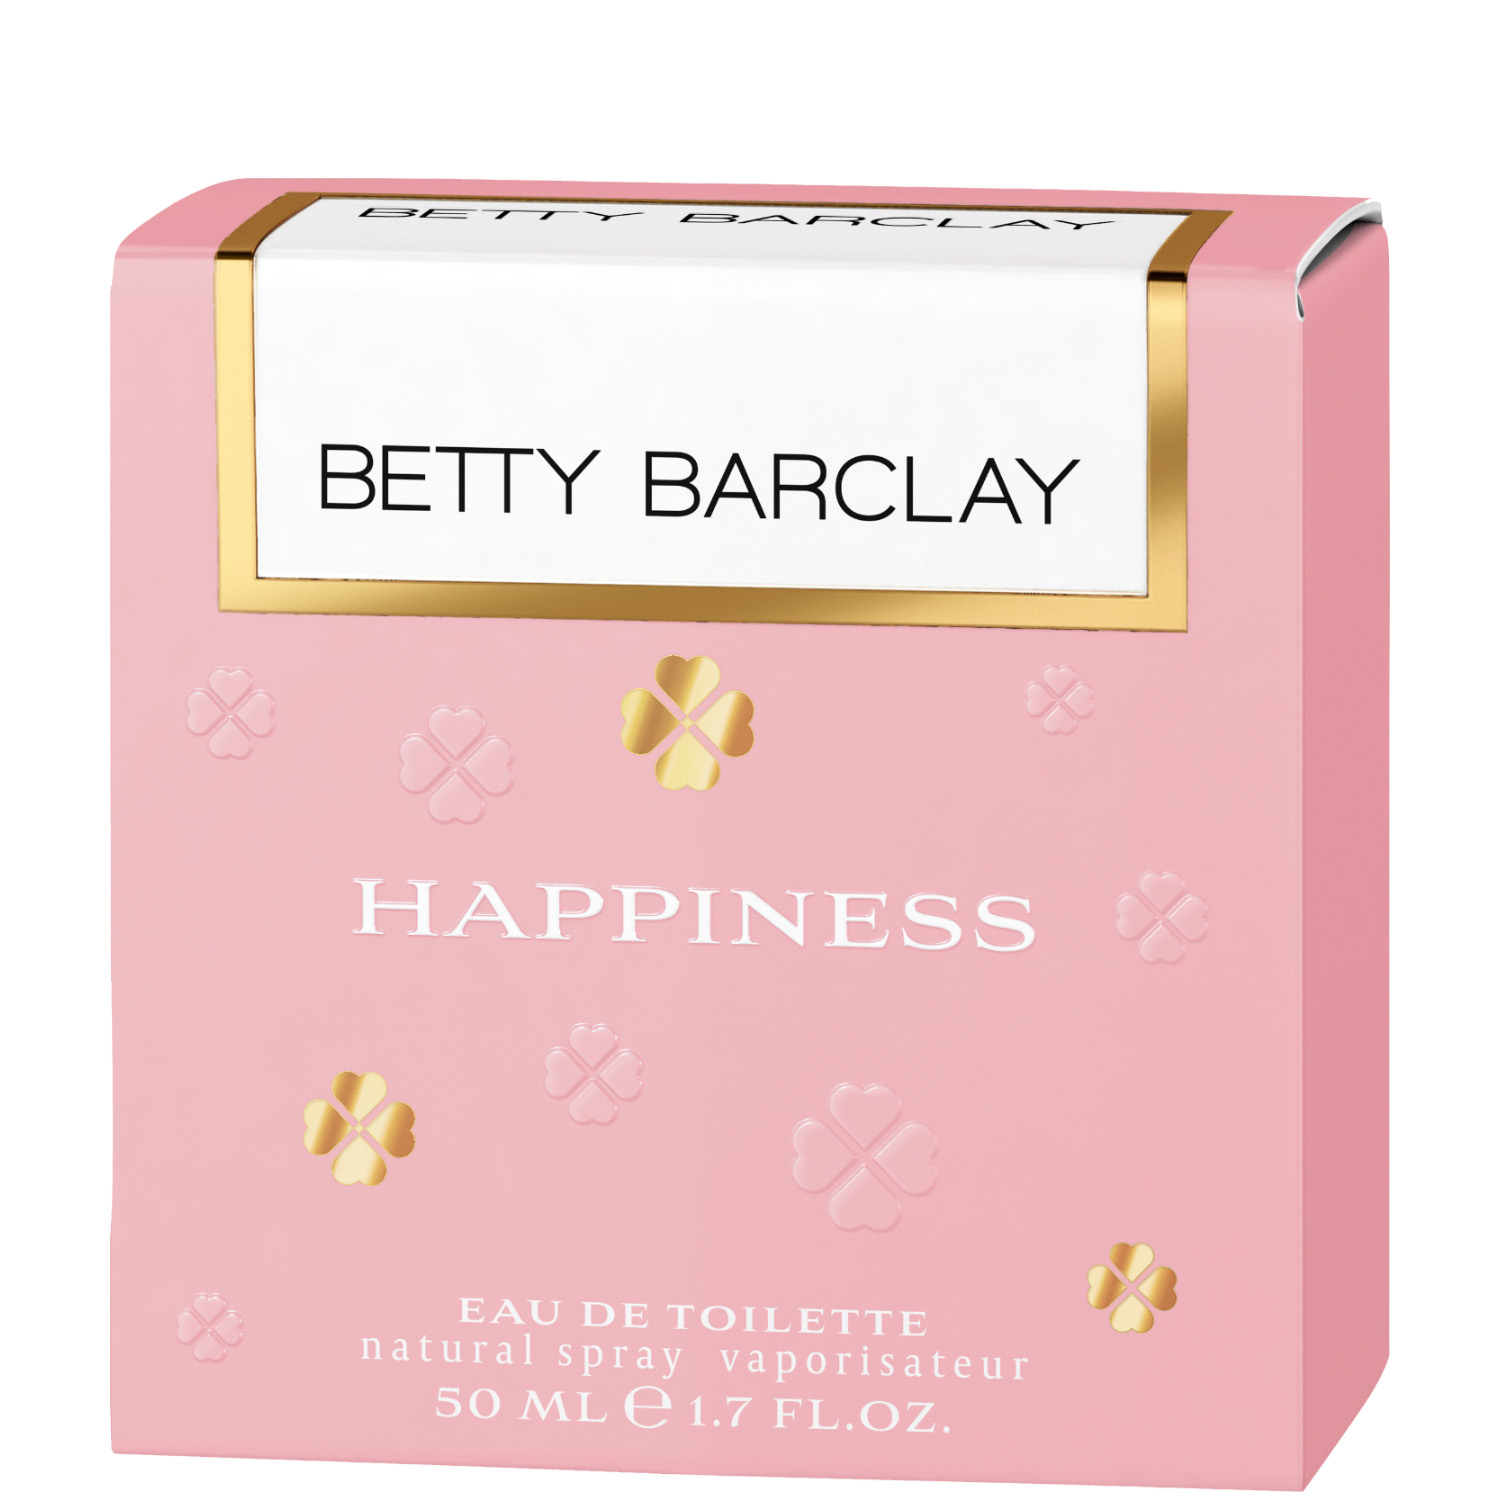 Betty Barclay Happiness Eau de Toilette 50ml